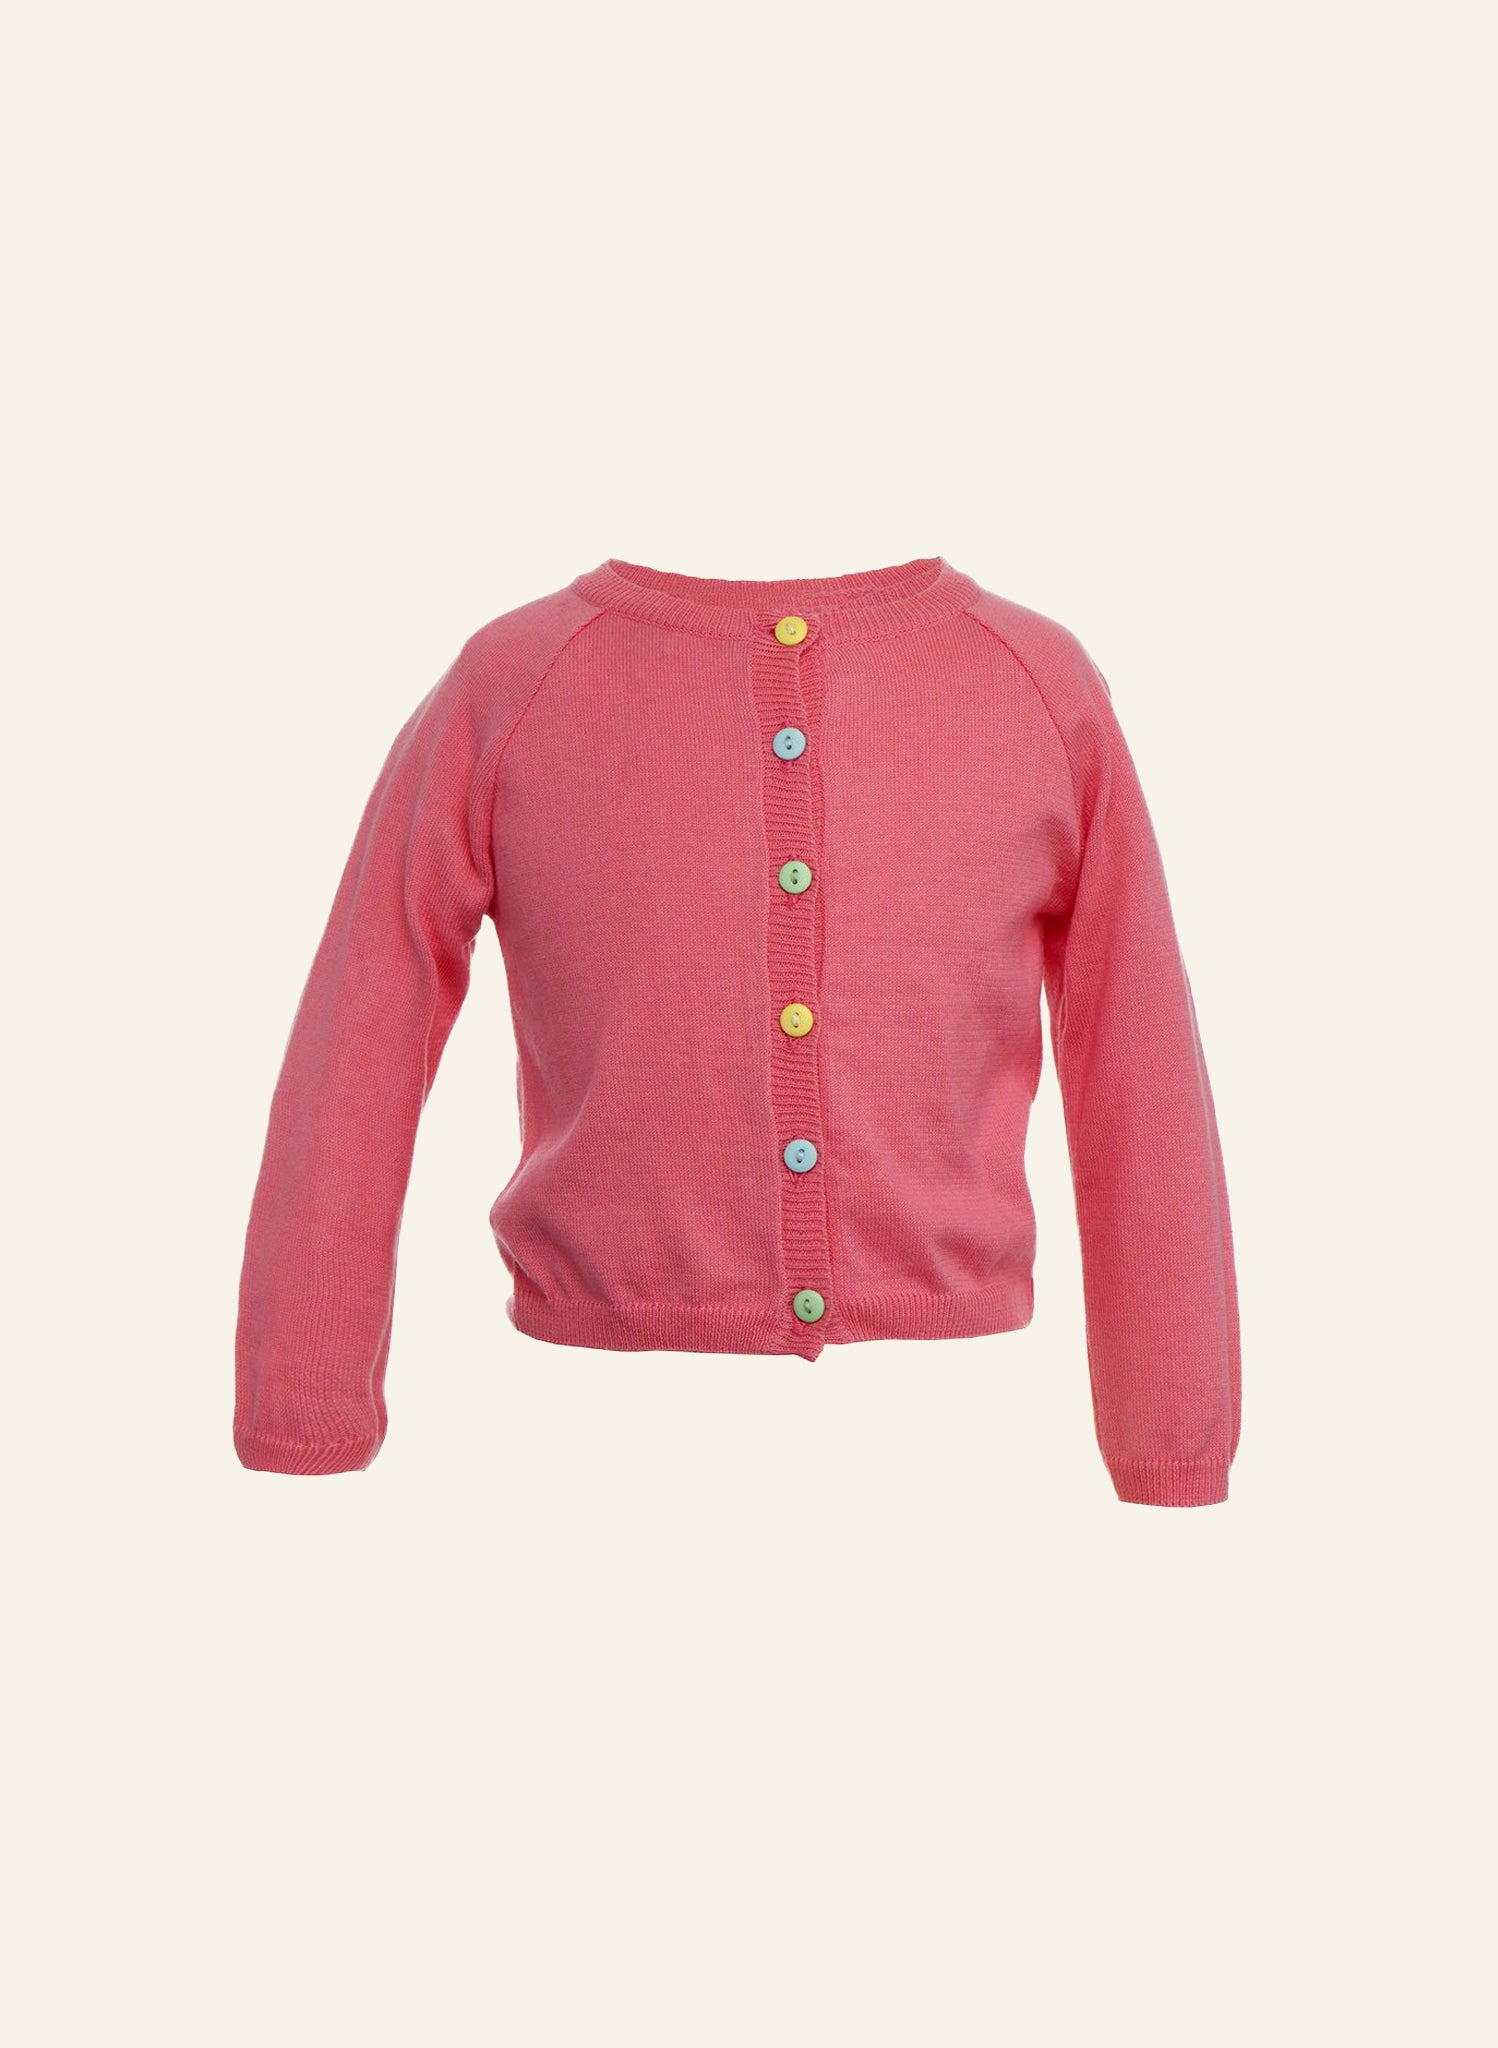 Children's Classic Cardigan in Rose | 100% Cotton | Palava